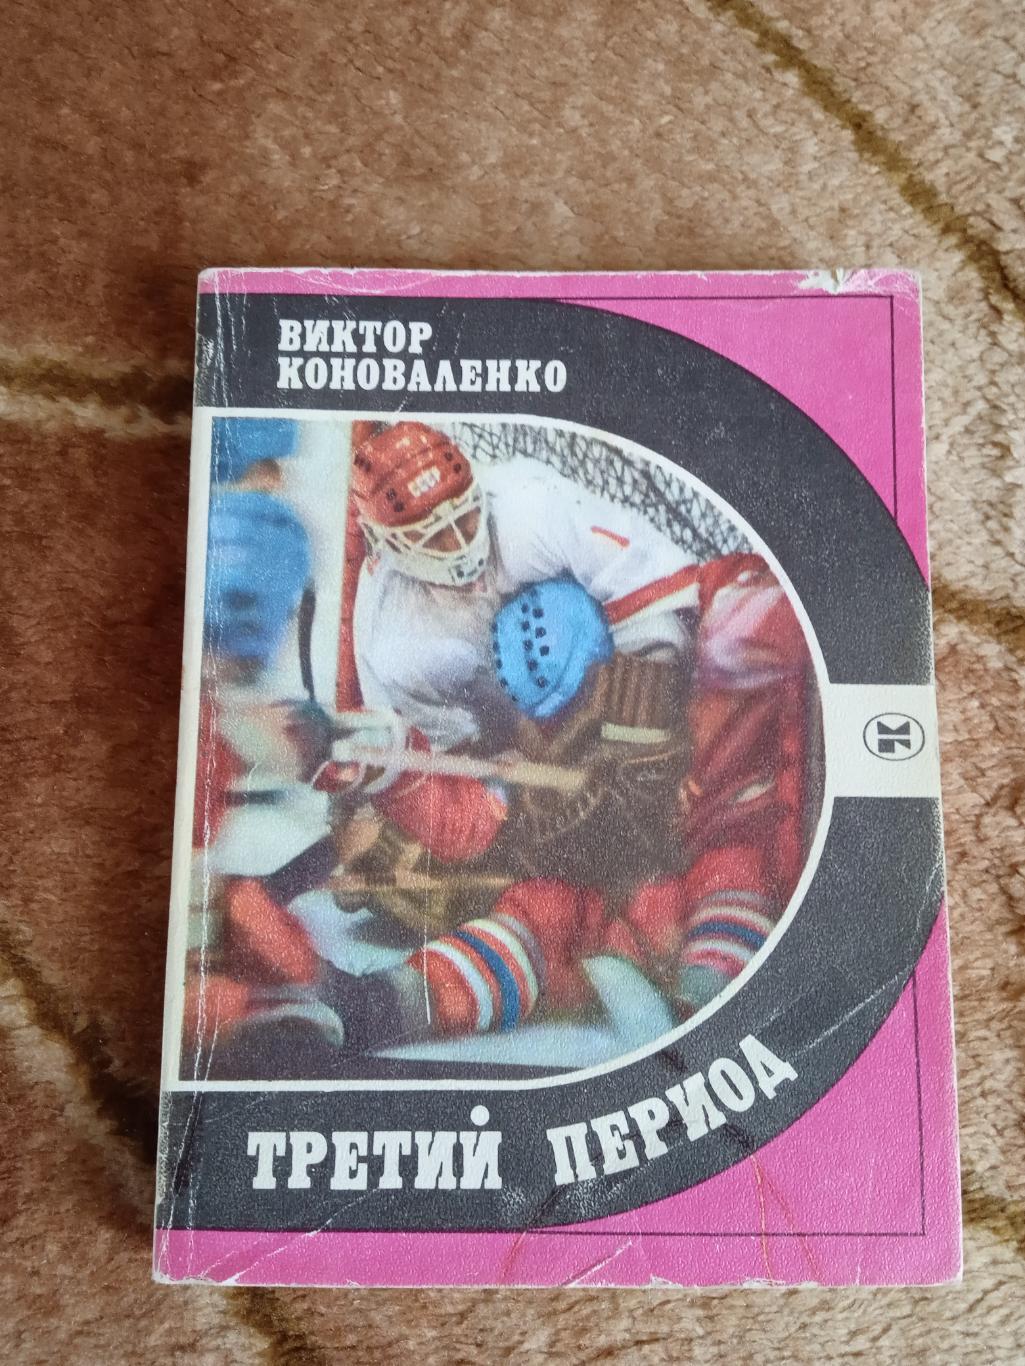 В.Коноваленко.Третий период.Серия Спорт и личность.1986 г.(Автограф).